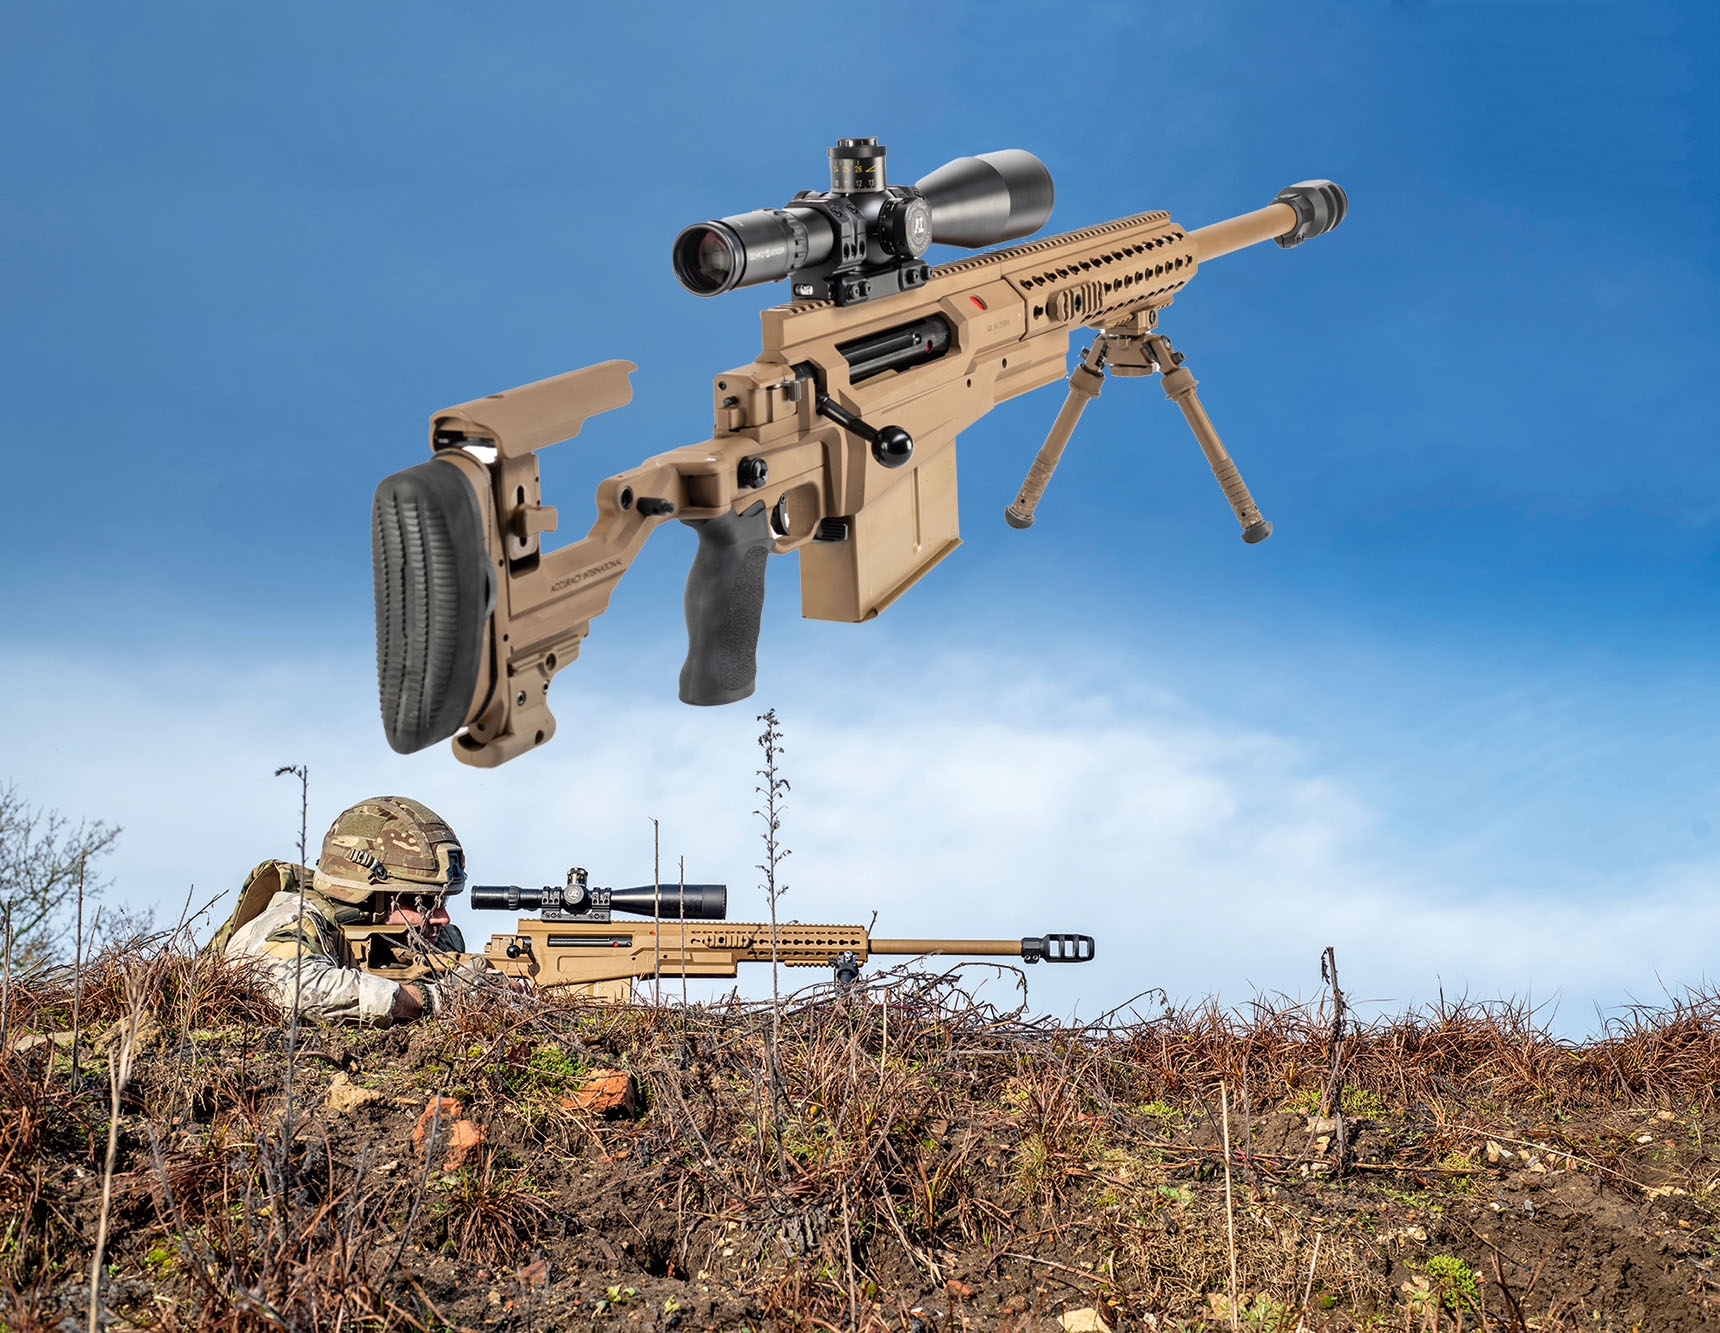 On test: Accuracy International AX50 ELR in .50 BMG, a powerful